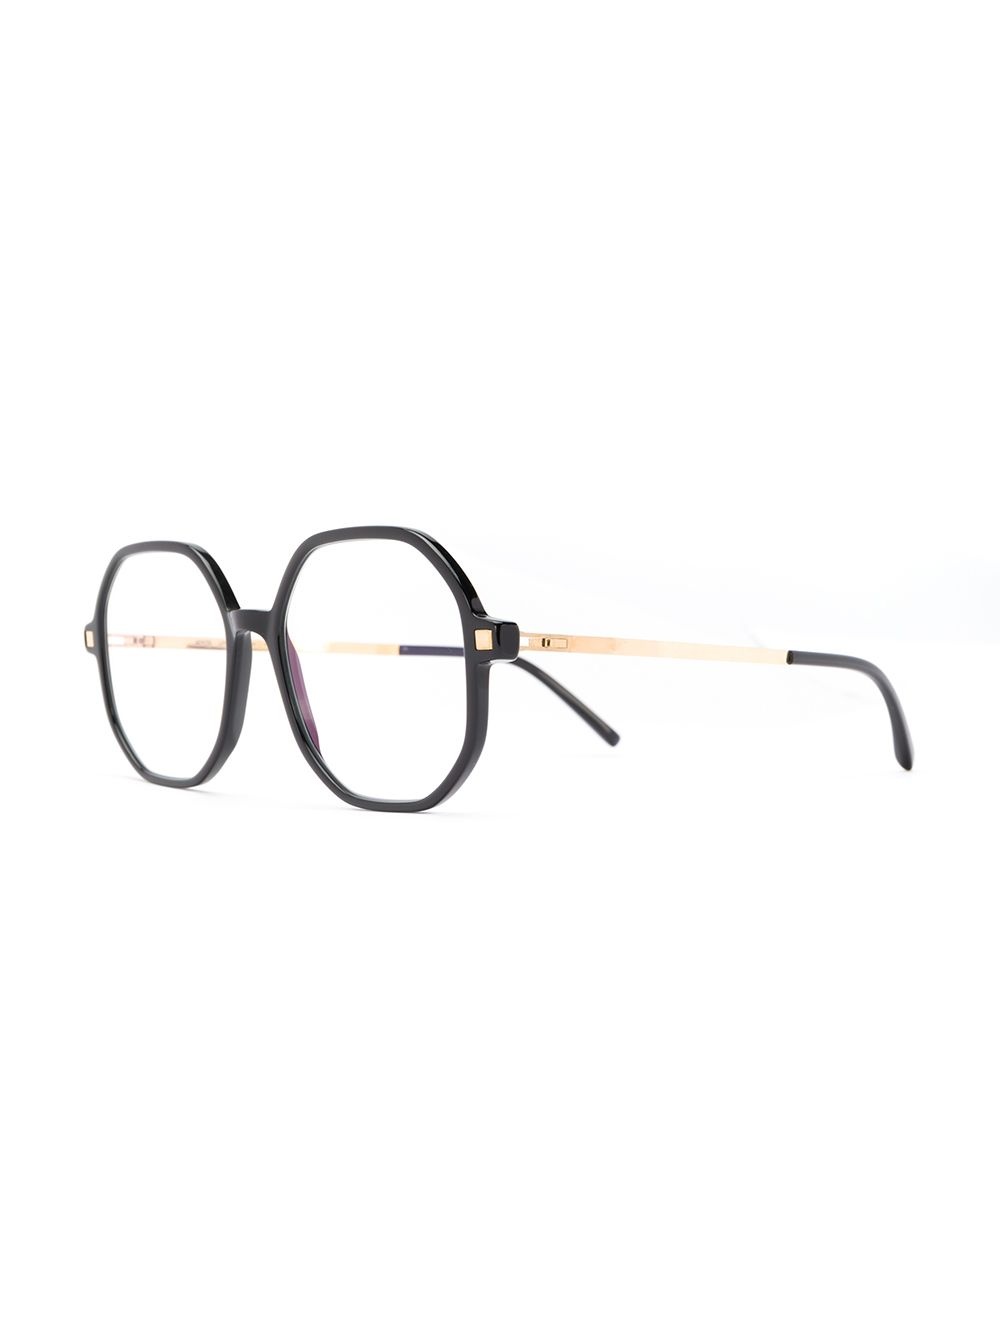 hilla optical glasses - 2